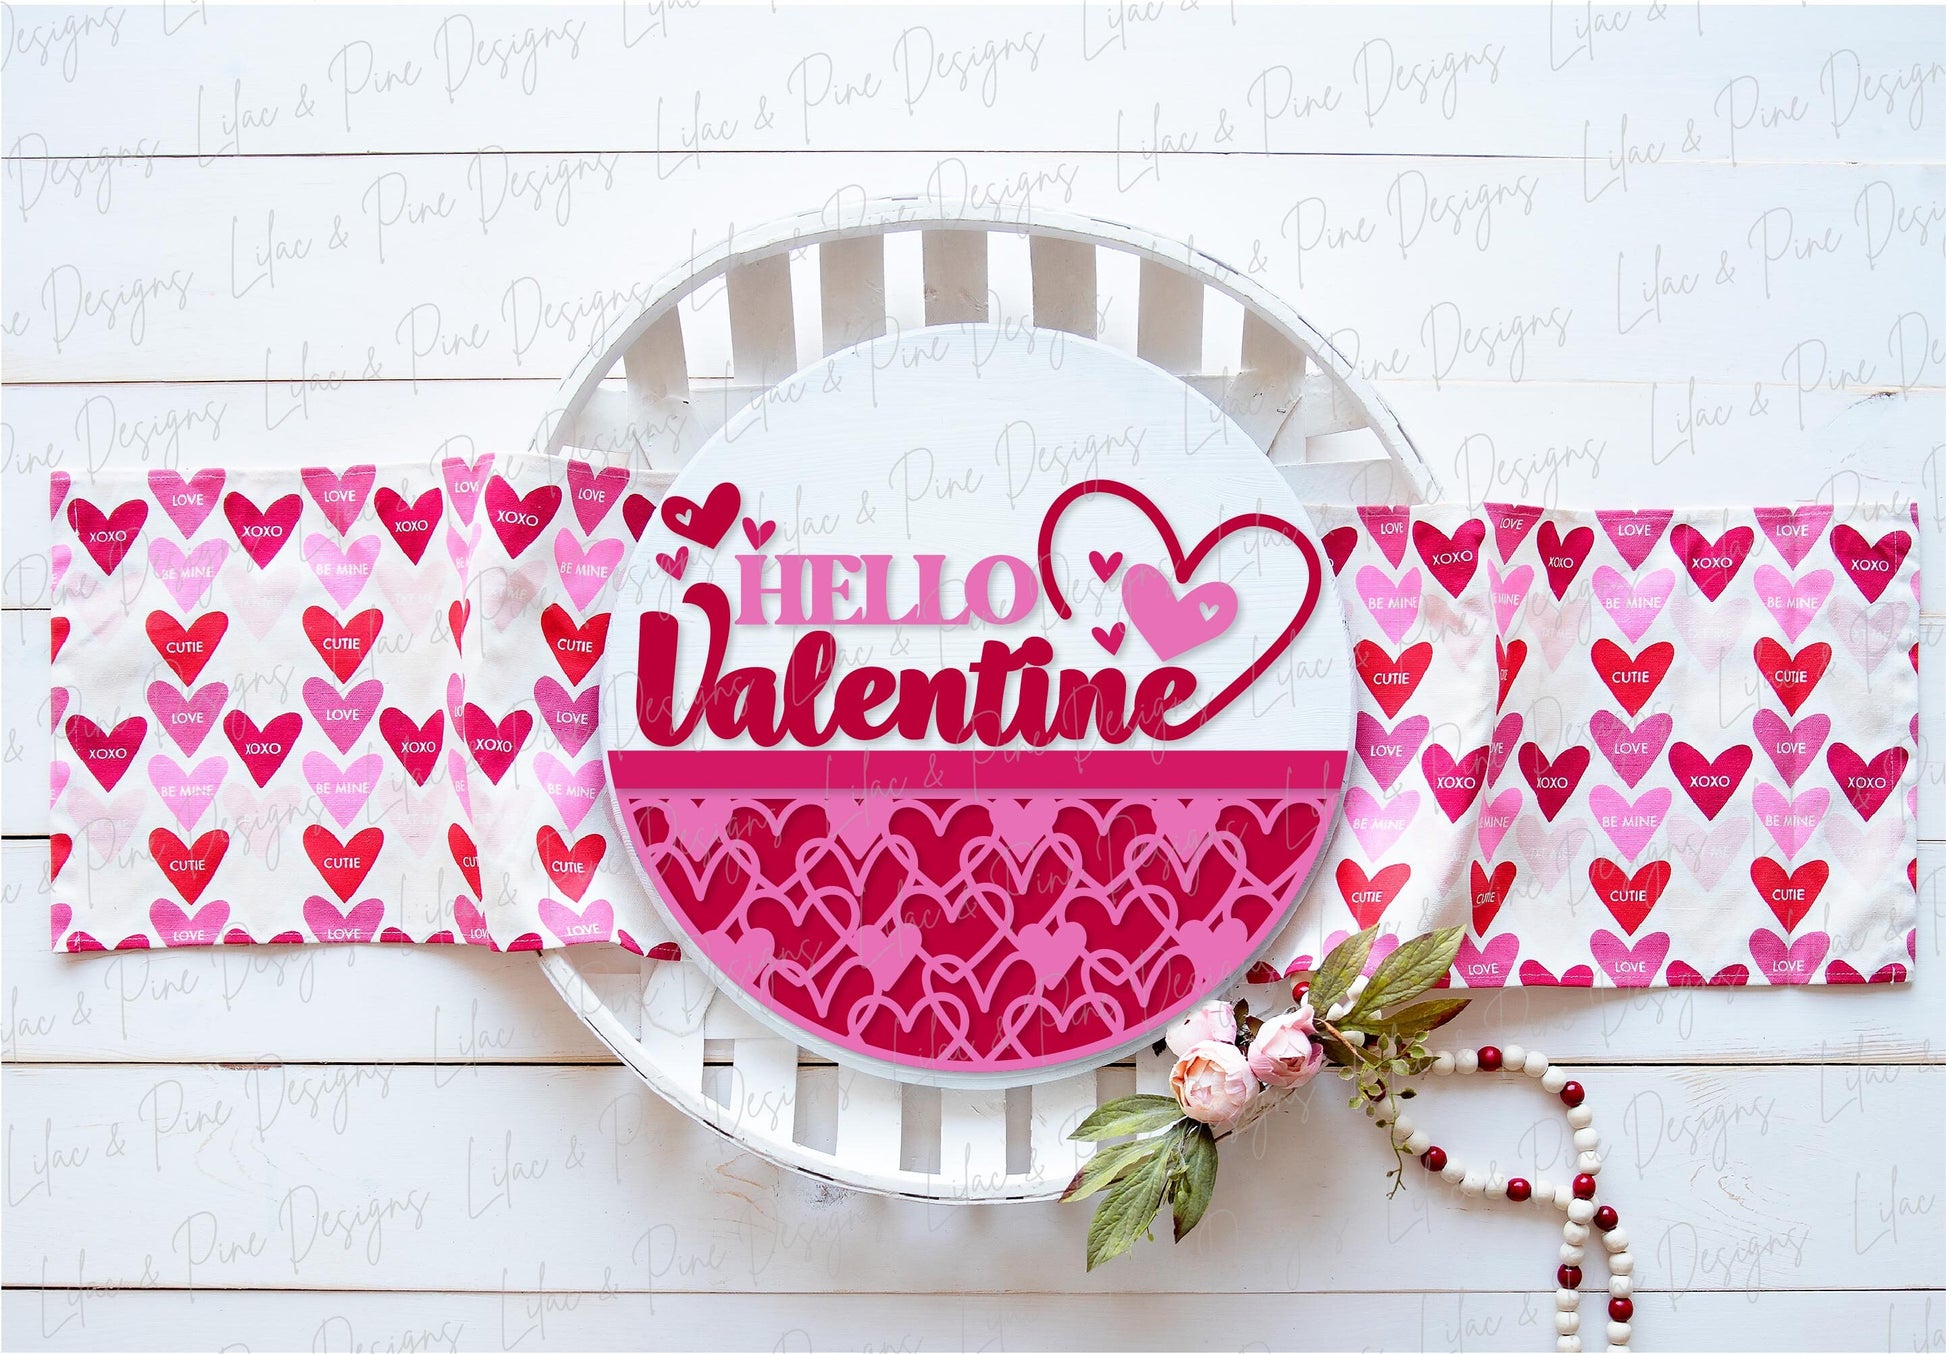 Hello Valentine door hanger SVG, Valentine sign SVG, Welcome sign, heart door round svg, Valentines Day decor, Glowforge SVG, laser cut file